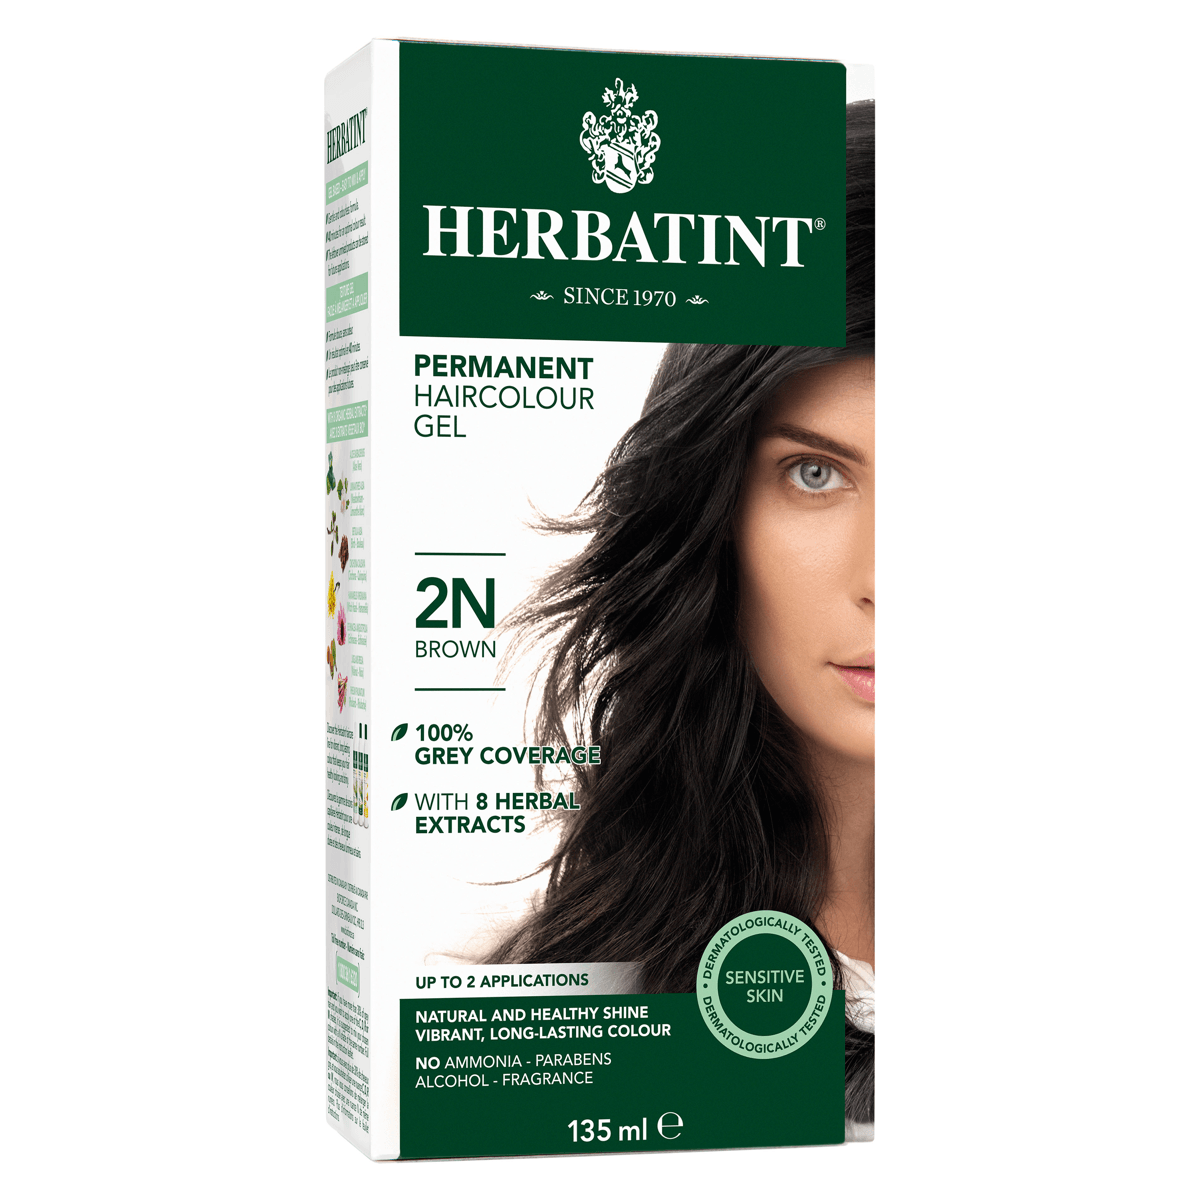 Herbatint Permanent Haircolor Gel 2N Brown, 150ml Online